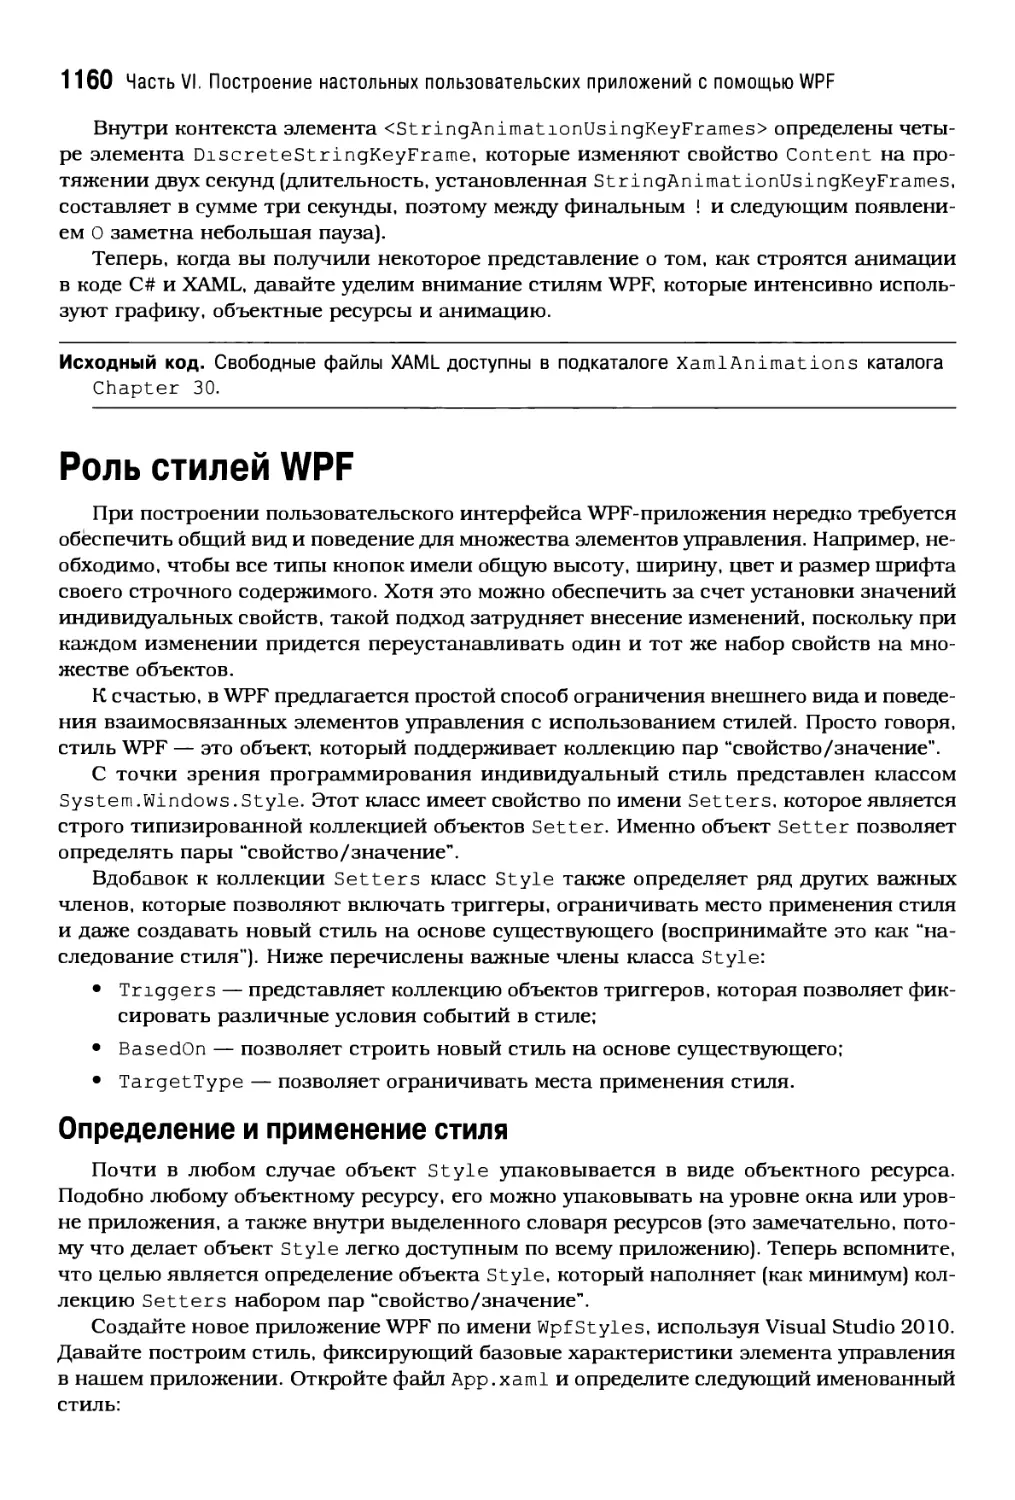 Роль стилей WPF